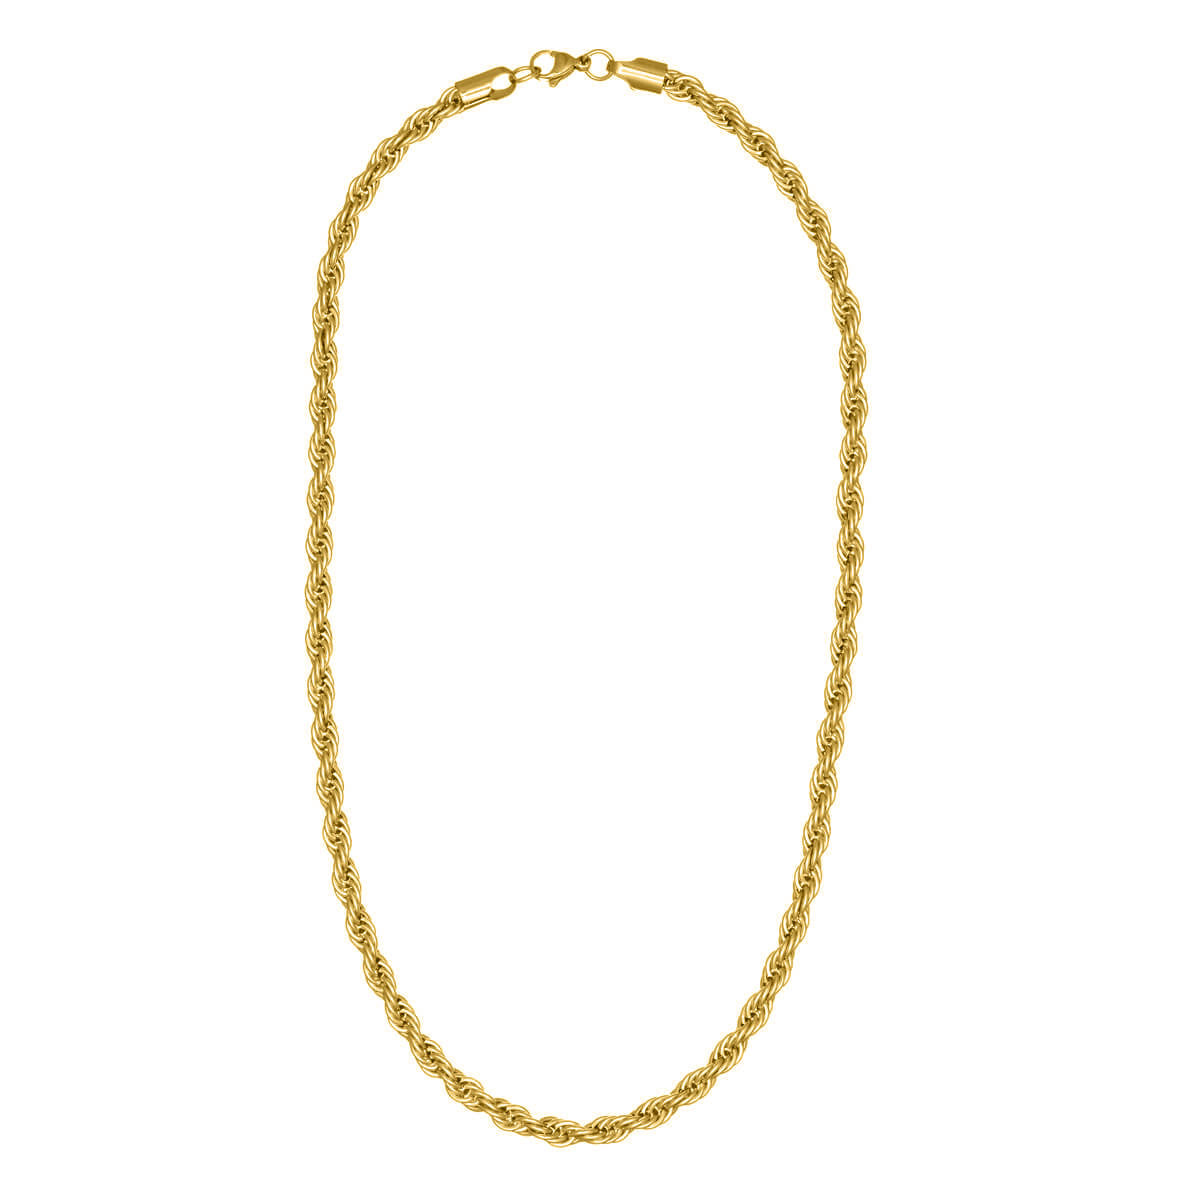 Rope chain steel cordeliaketju necklace 6mm 55cm